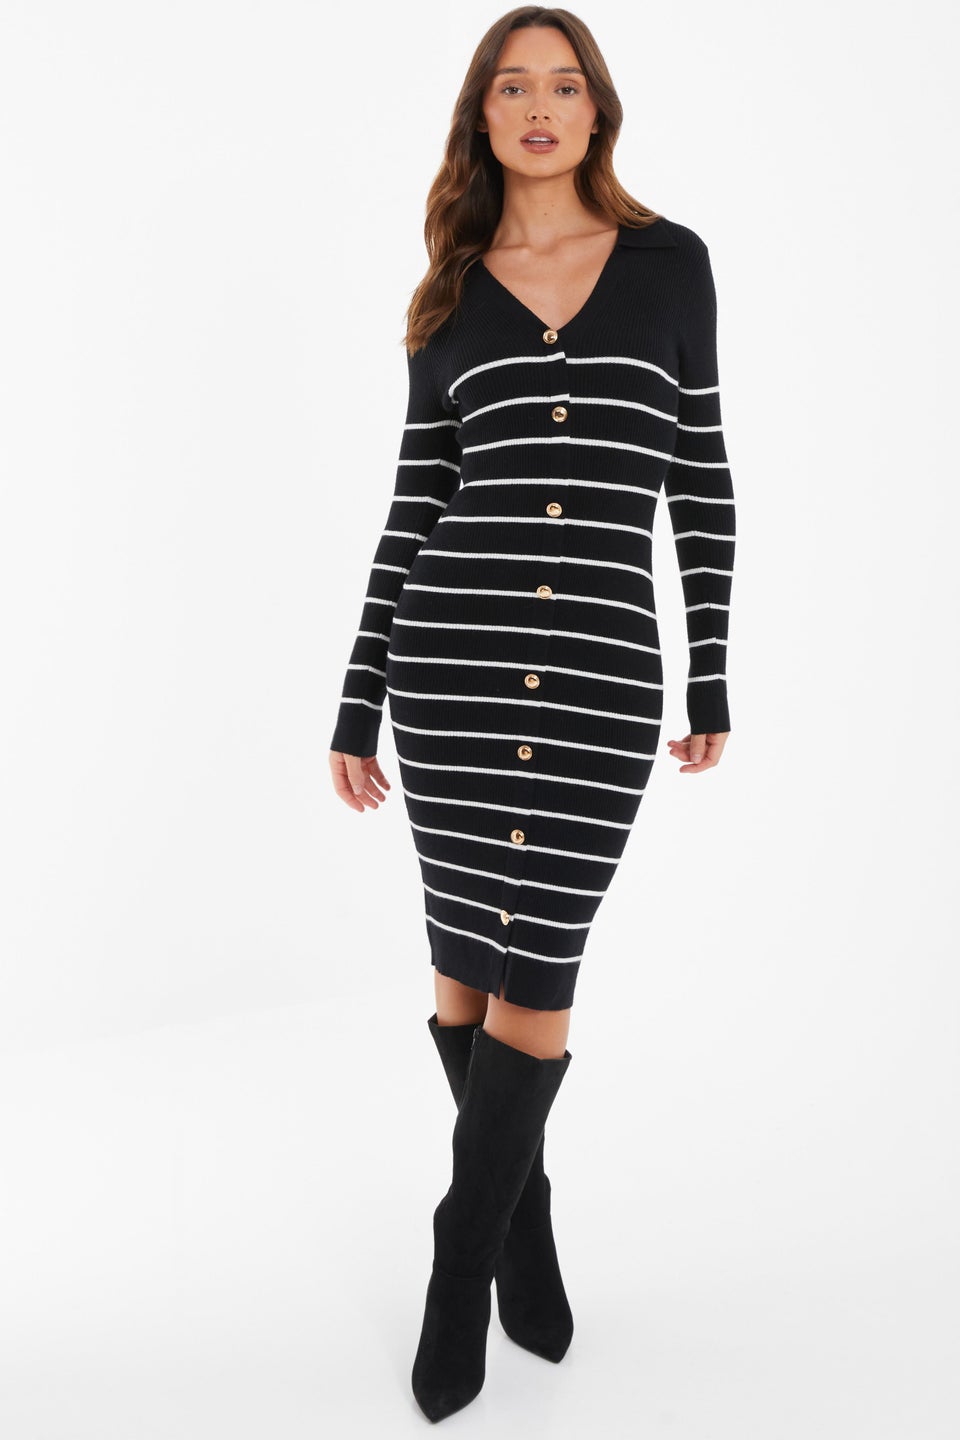 Quiz Black Stripe Knitted Midi Dress